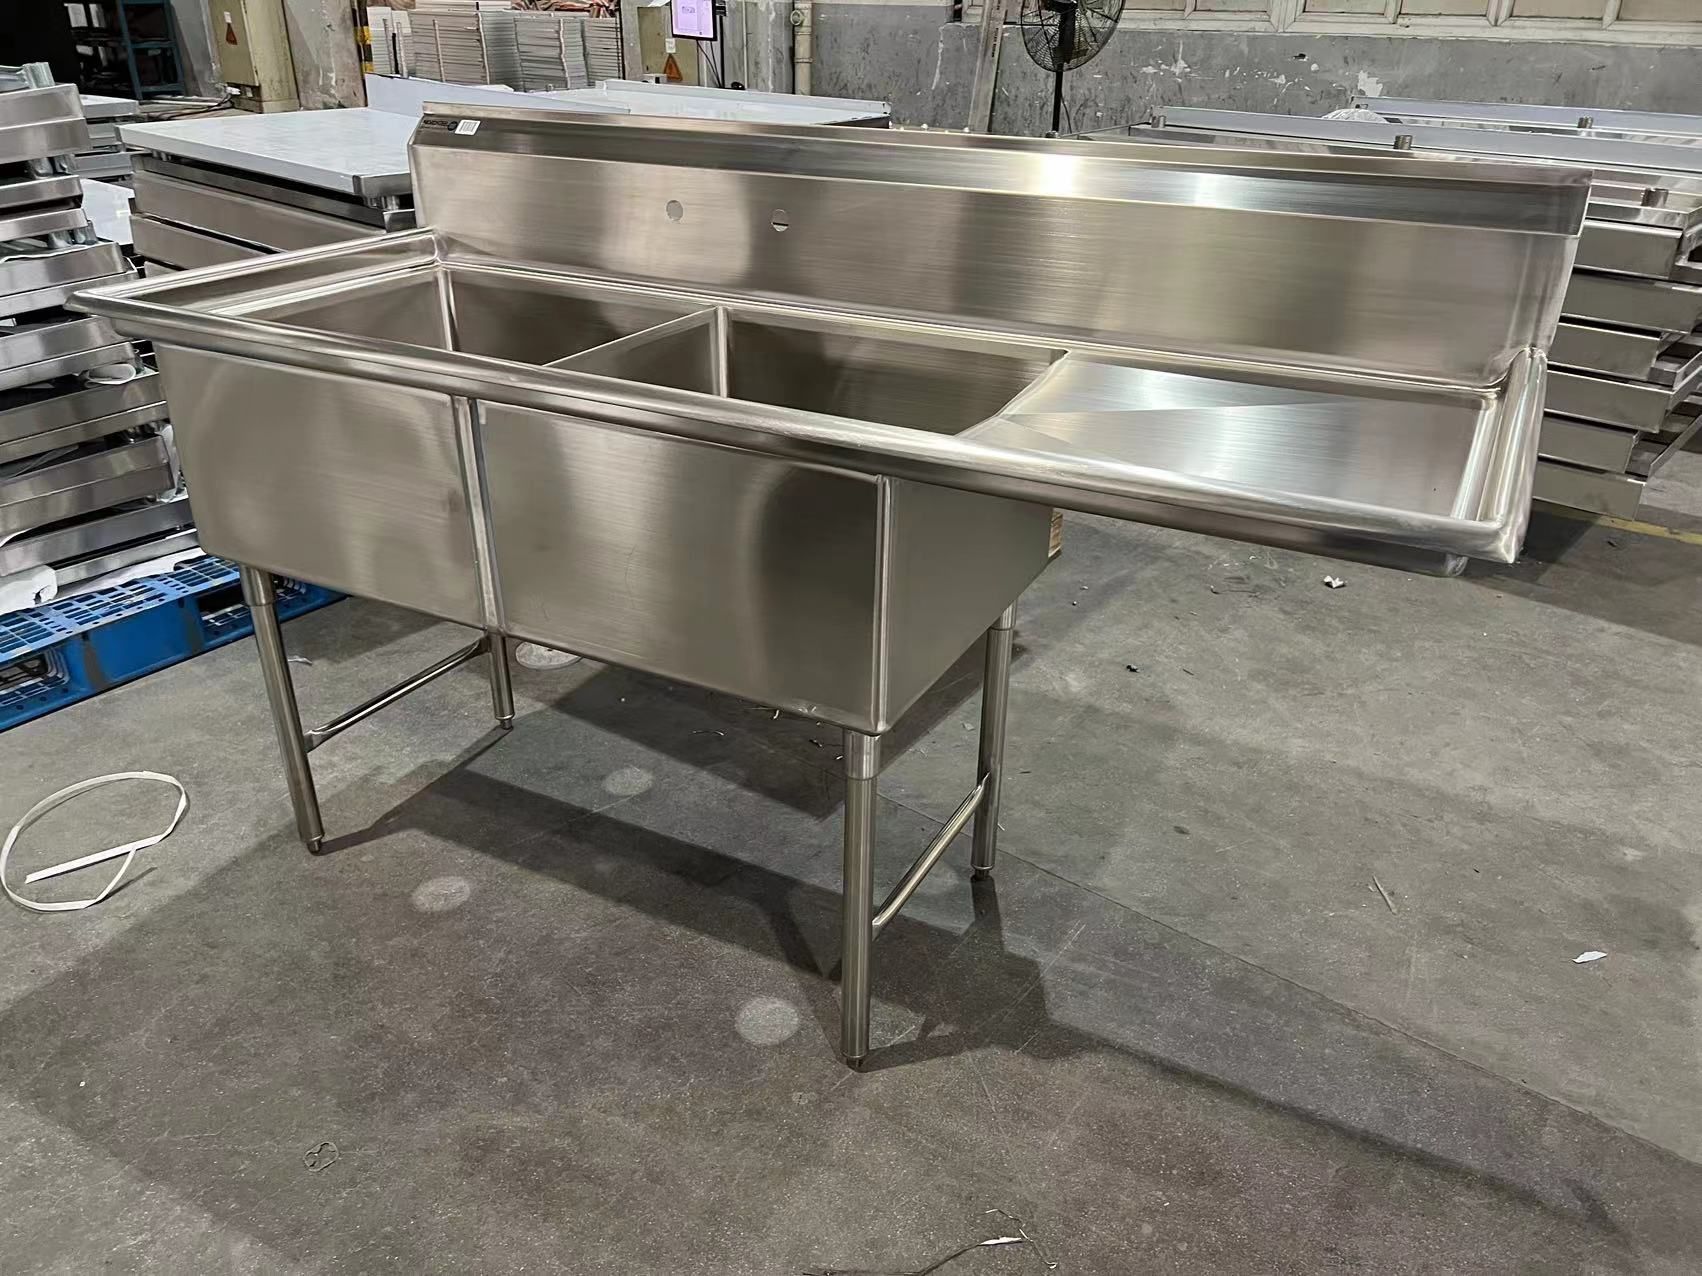 Brand New Industrial Grade Stainless Steel Sink NSF Gauge 16 